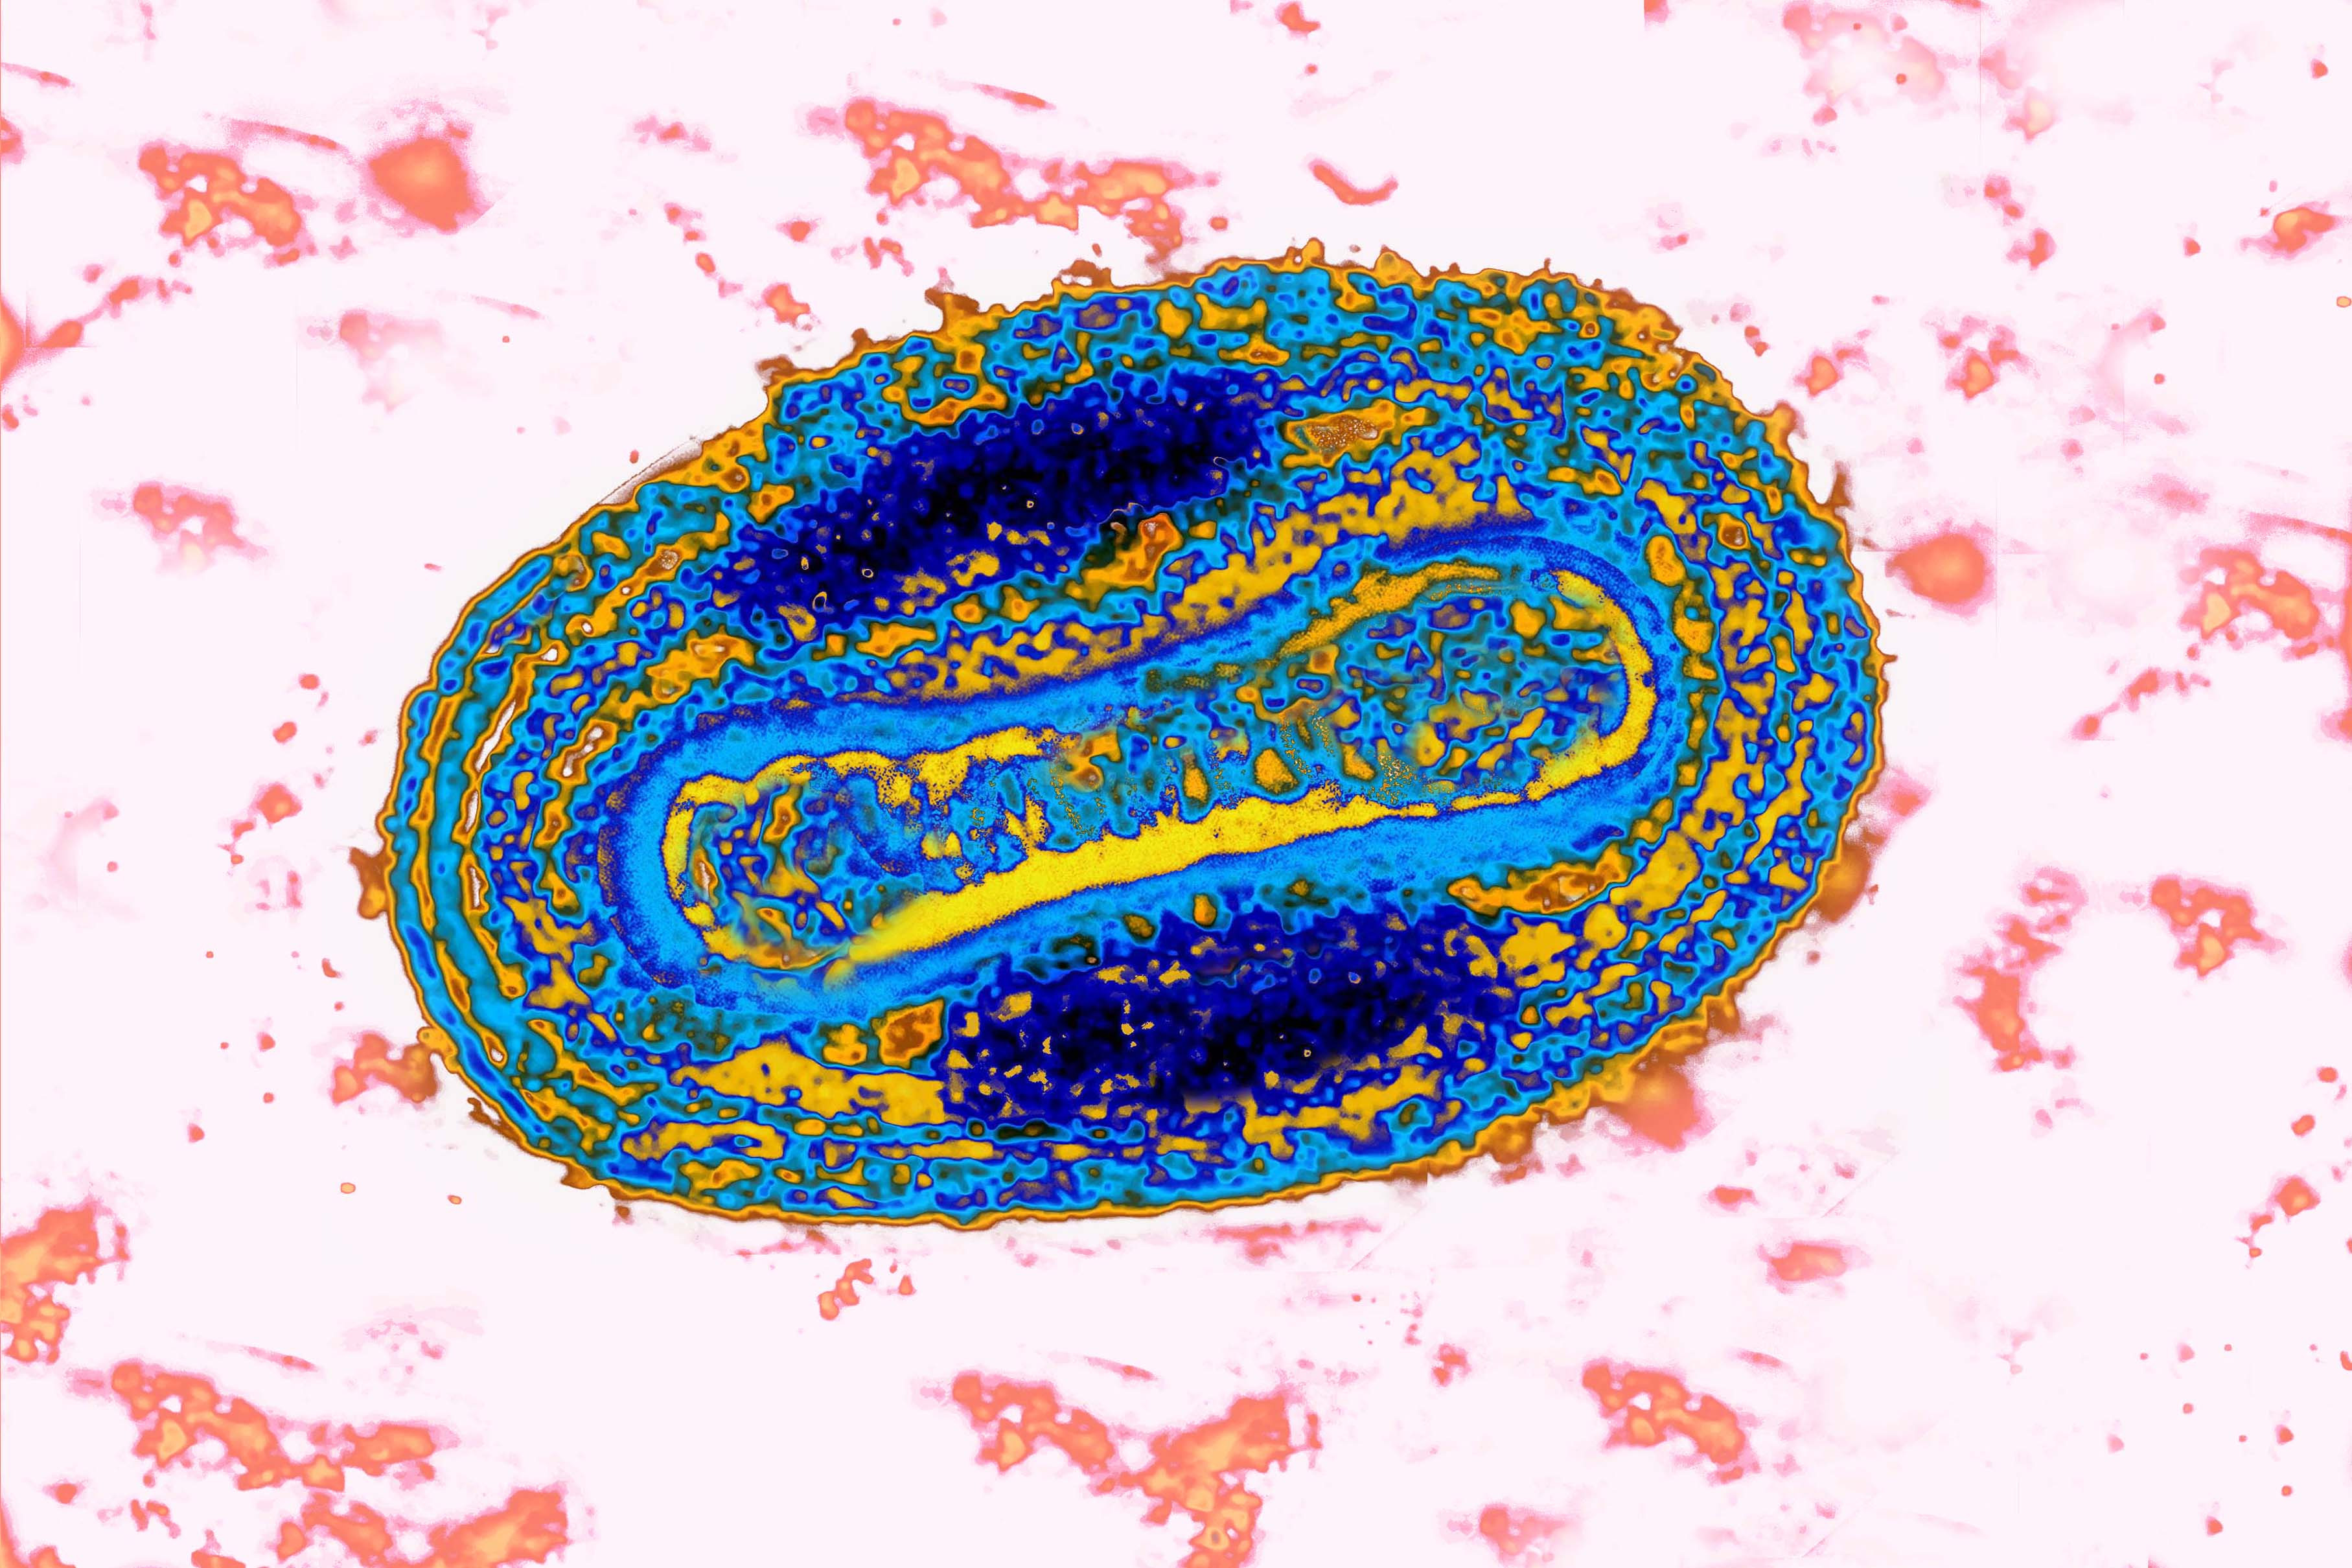 Variole Virus. (BSIP—UIG via Getty Images)